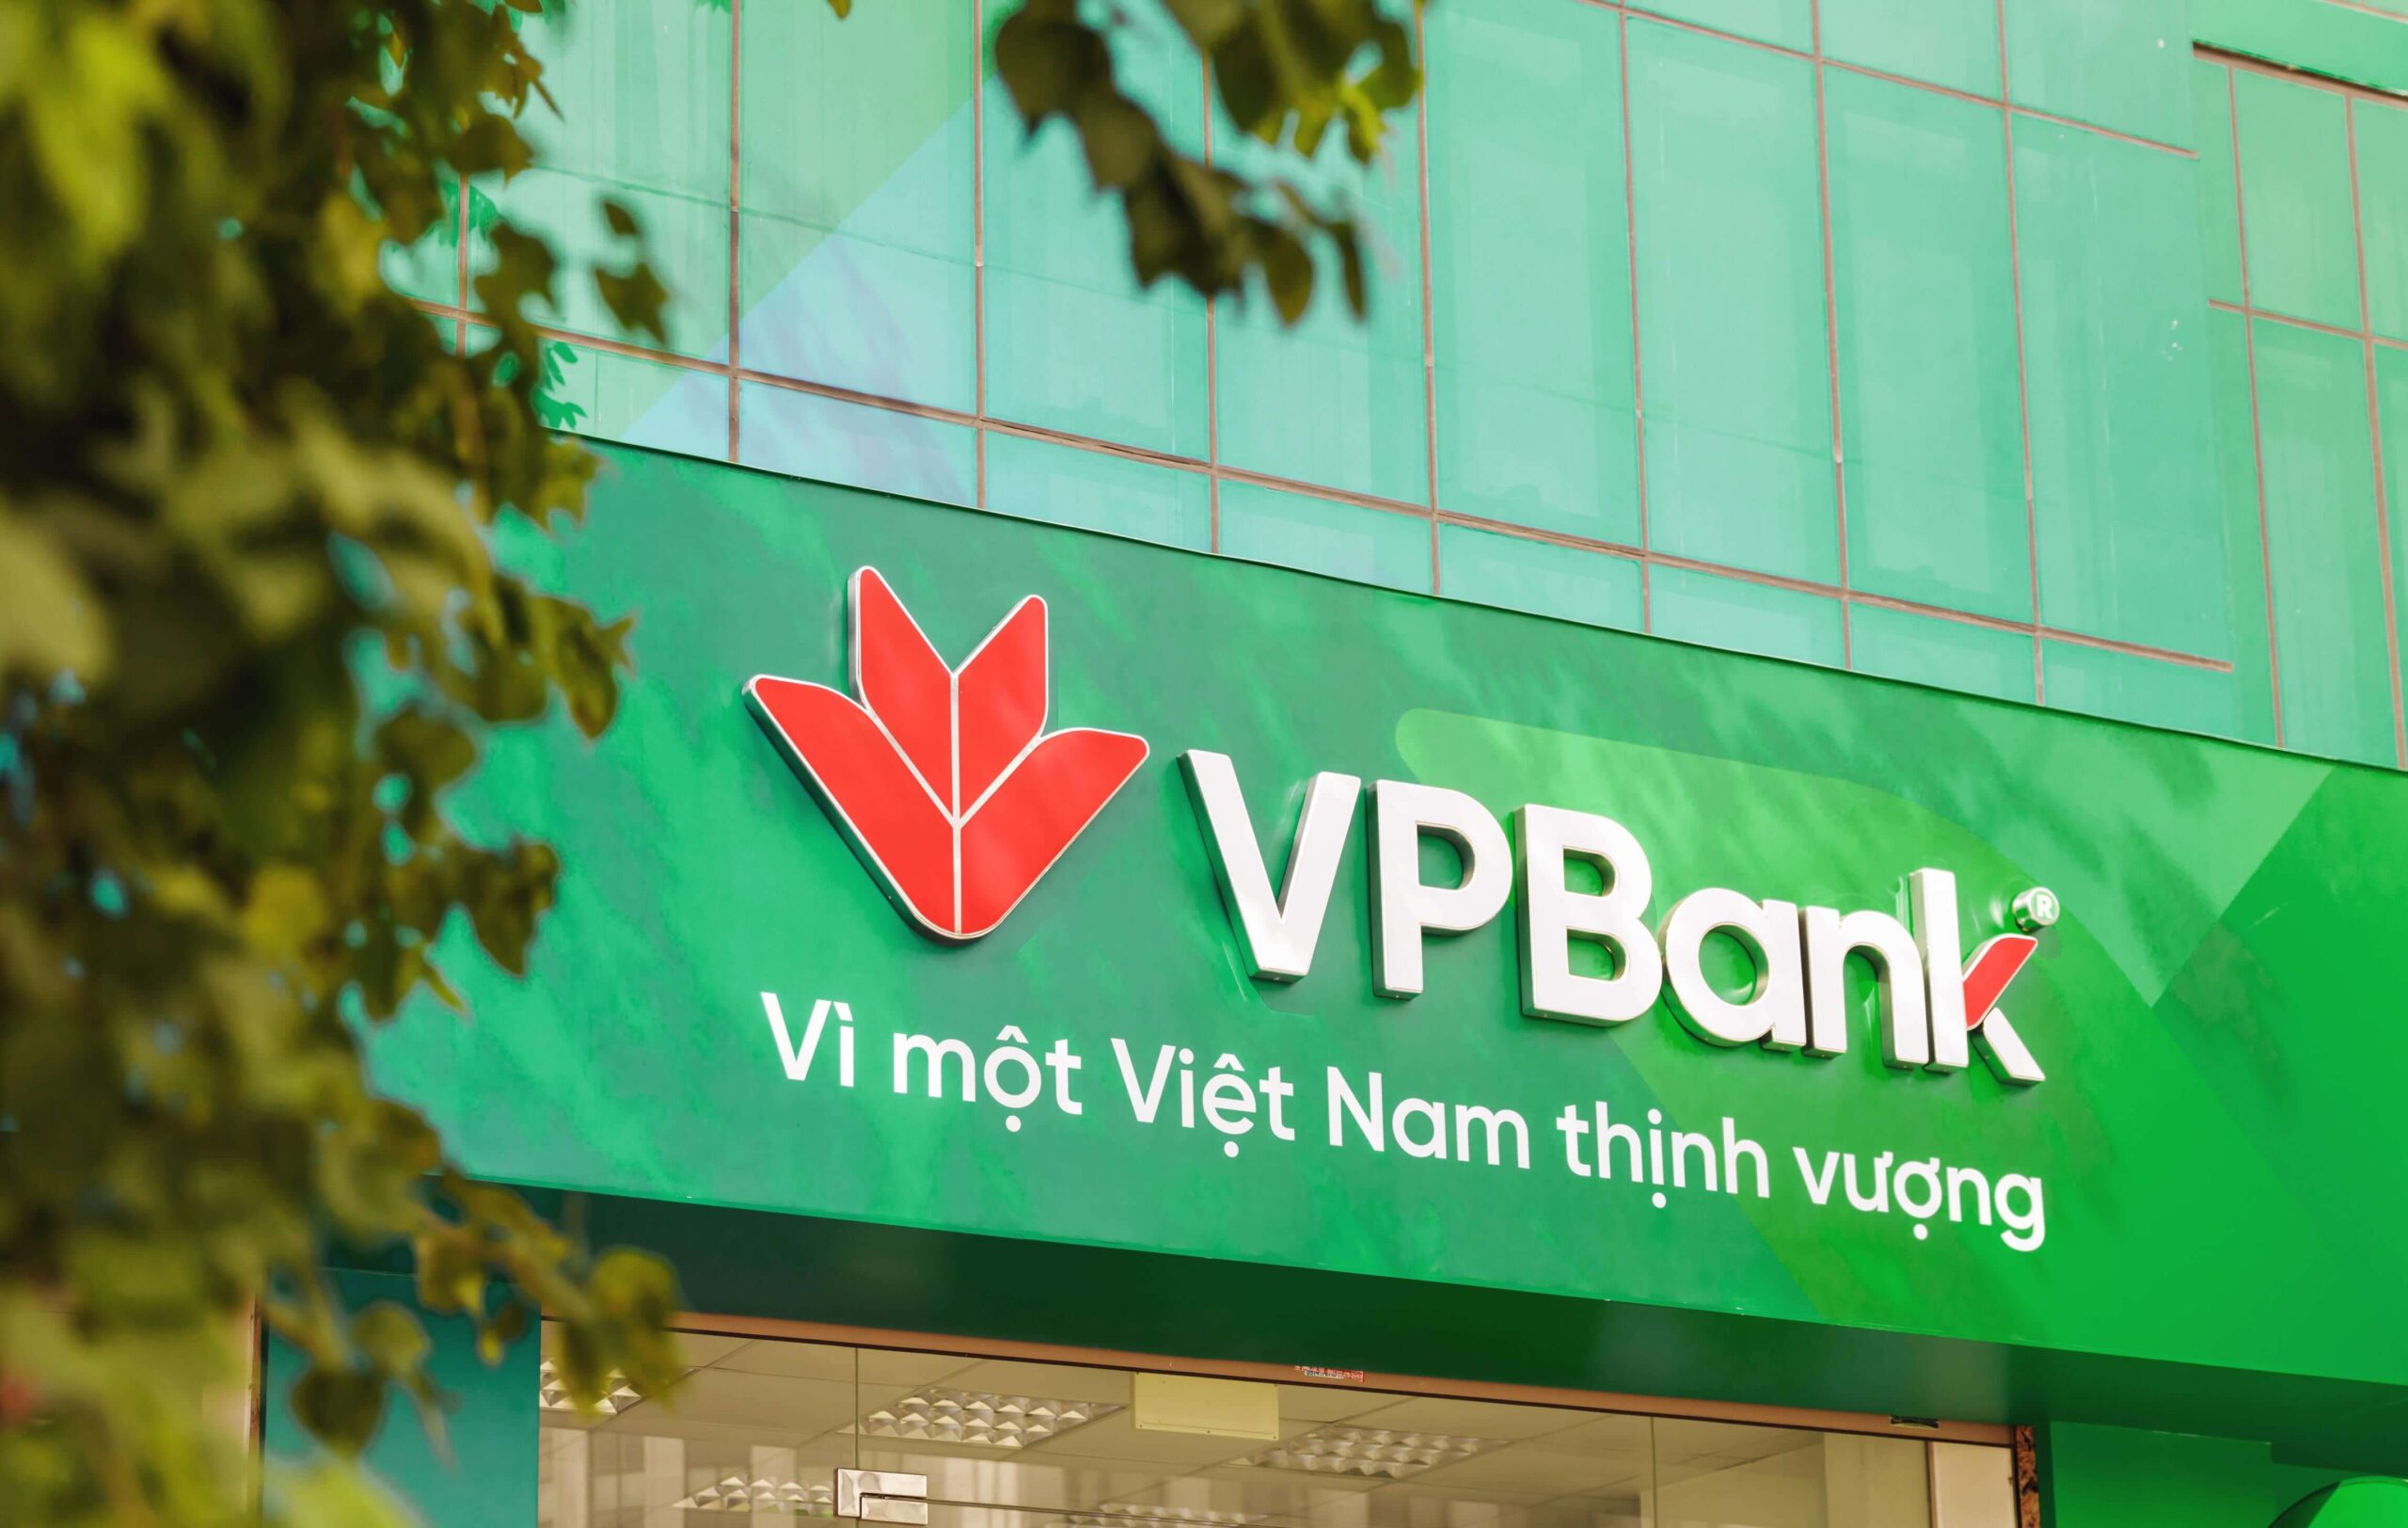 VPBank – Ngân hàng Thương mại Cổ phần Việt Nam Thịnh Vượng